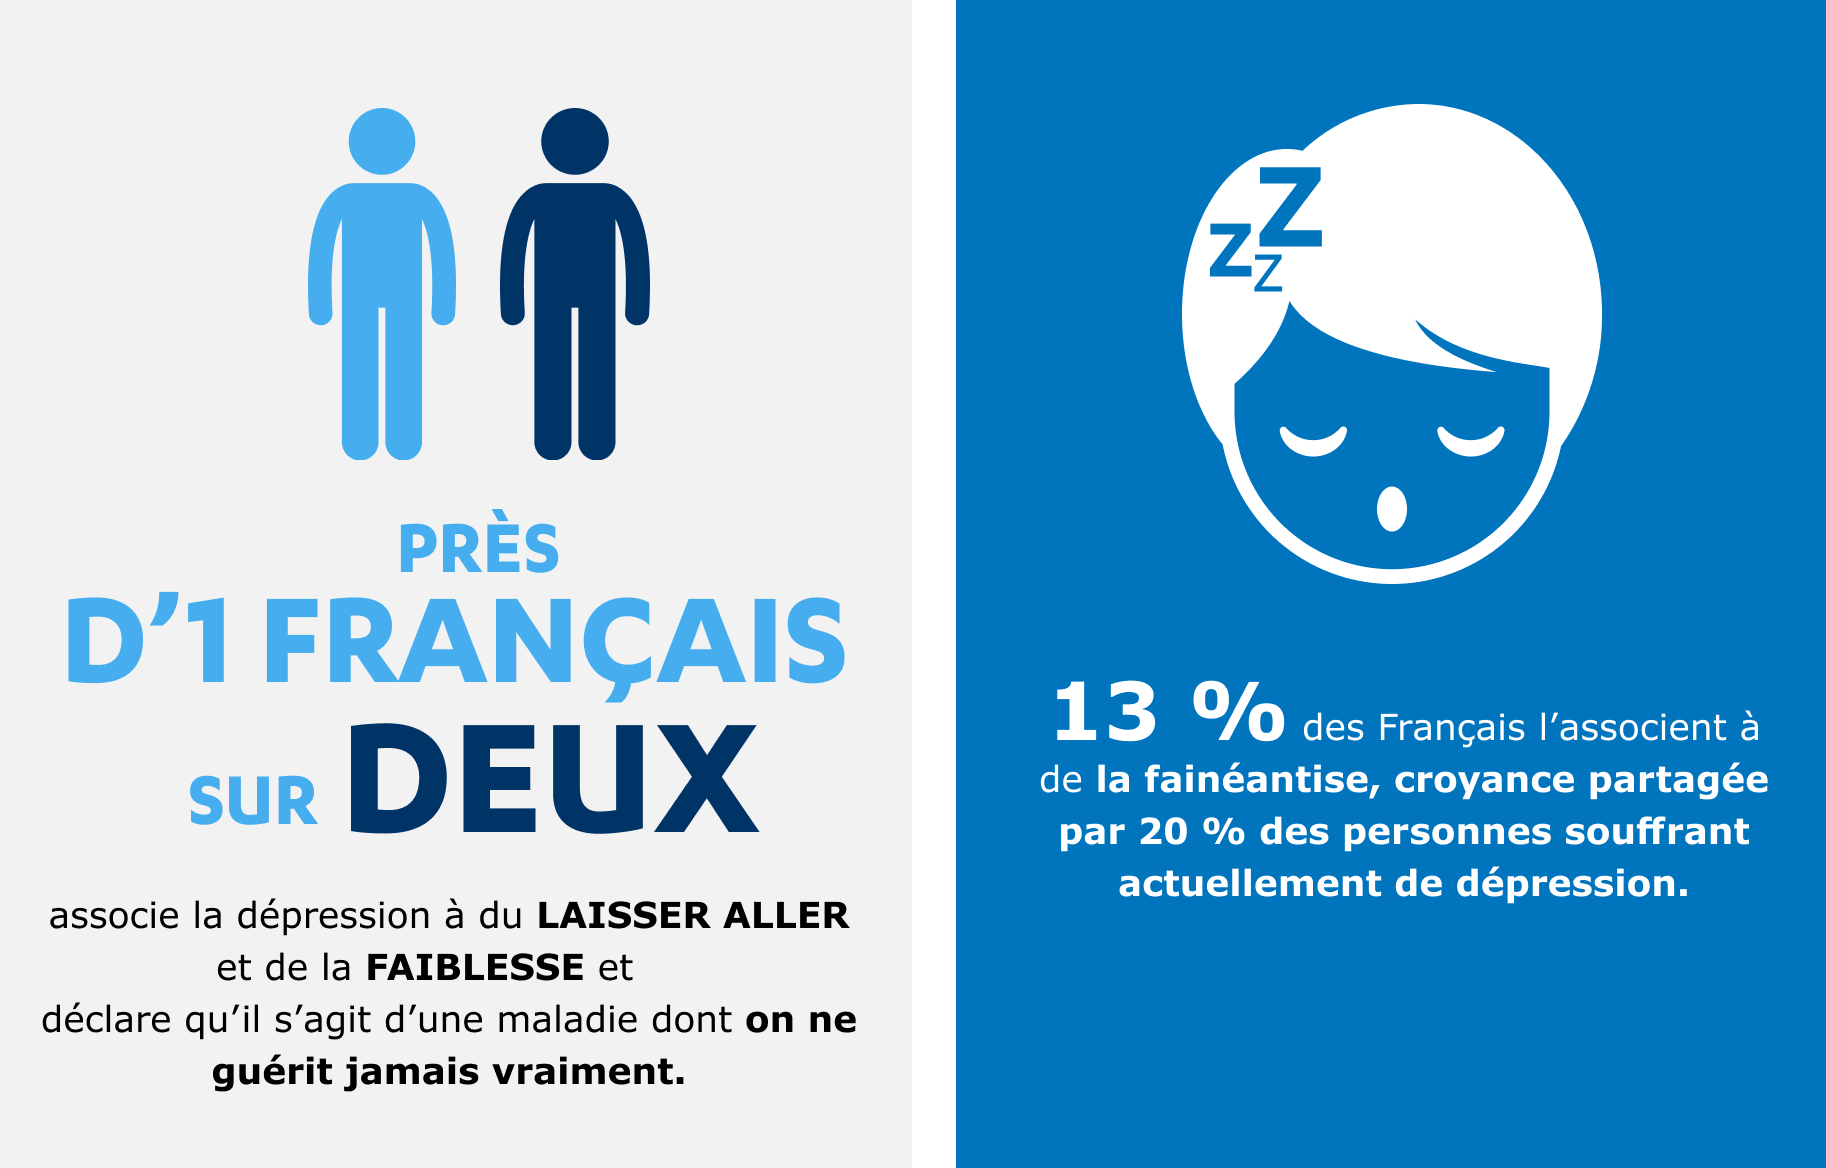 Près d'1 Français sur 2 associe la dépression à du laisser aller et de la faiblesse // 13 % des Français l'associent à de la fainéantise